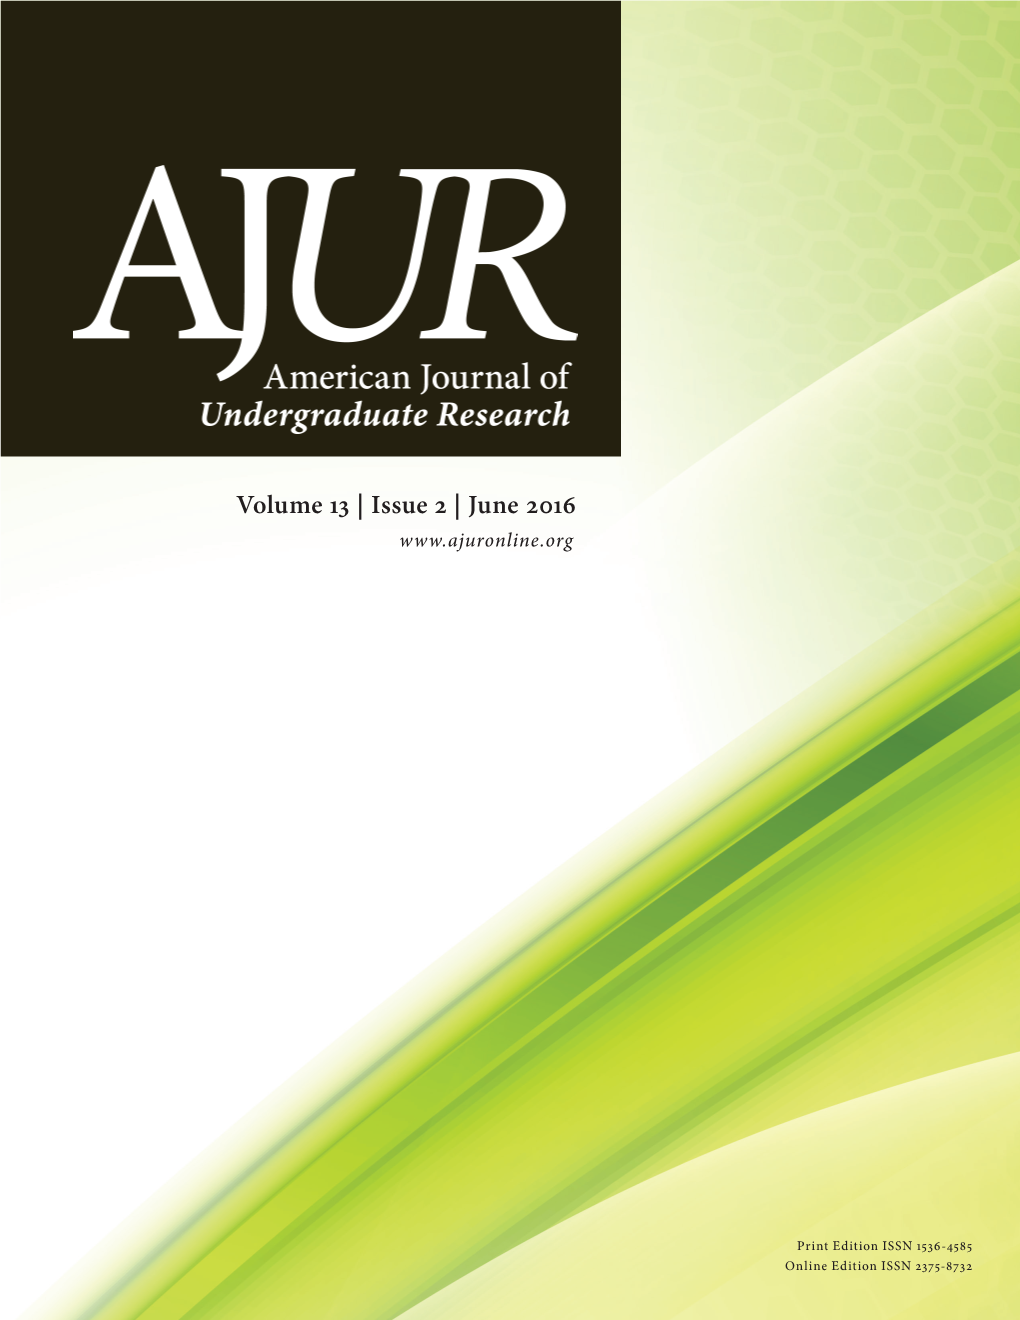 AJUR Volume 13 Issue 2 (June 2016)